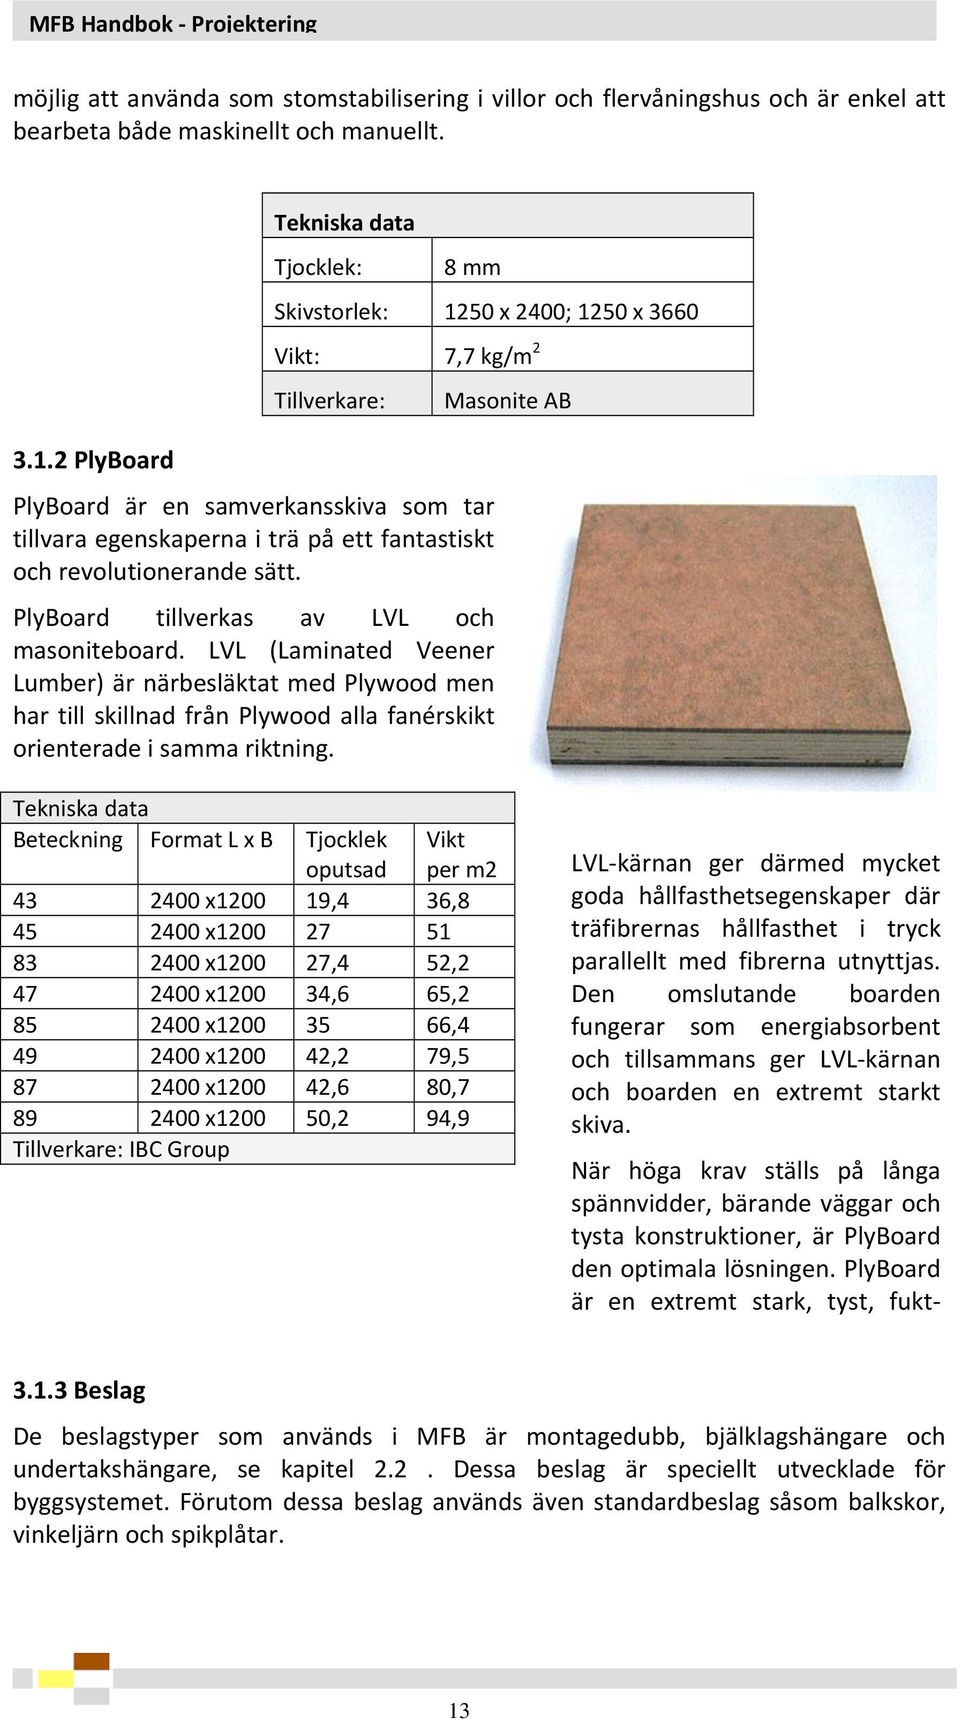 PlyBoard tillverkas av LVL och masoniteboard. LVL (Laminated Veener Lumber) är närbesläktat med Plywood men har till skillnad från Plywood alla fanérskikt orienterade i samma riktning.